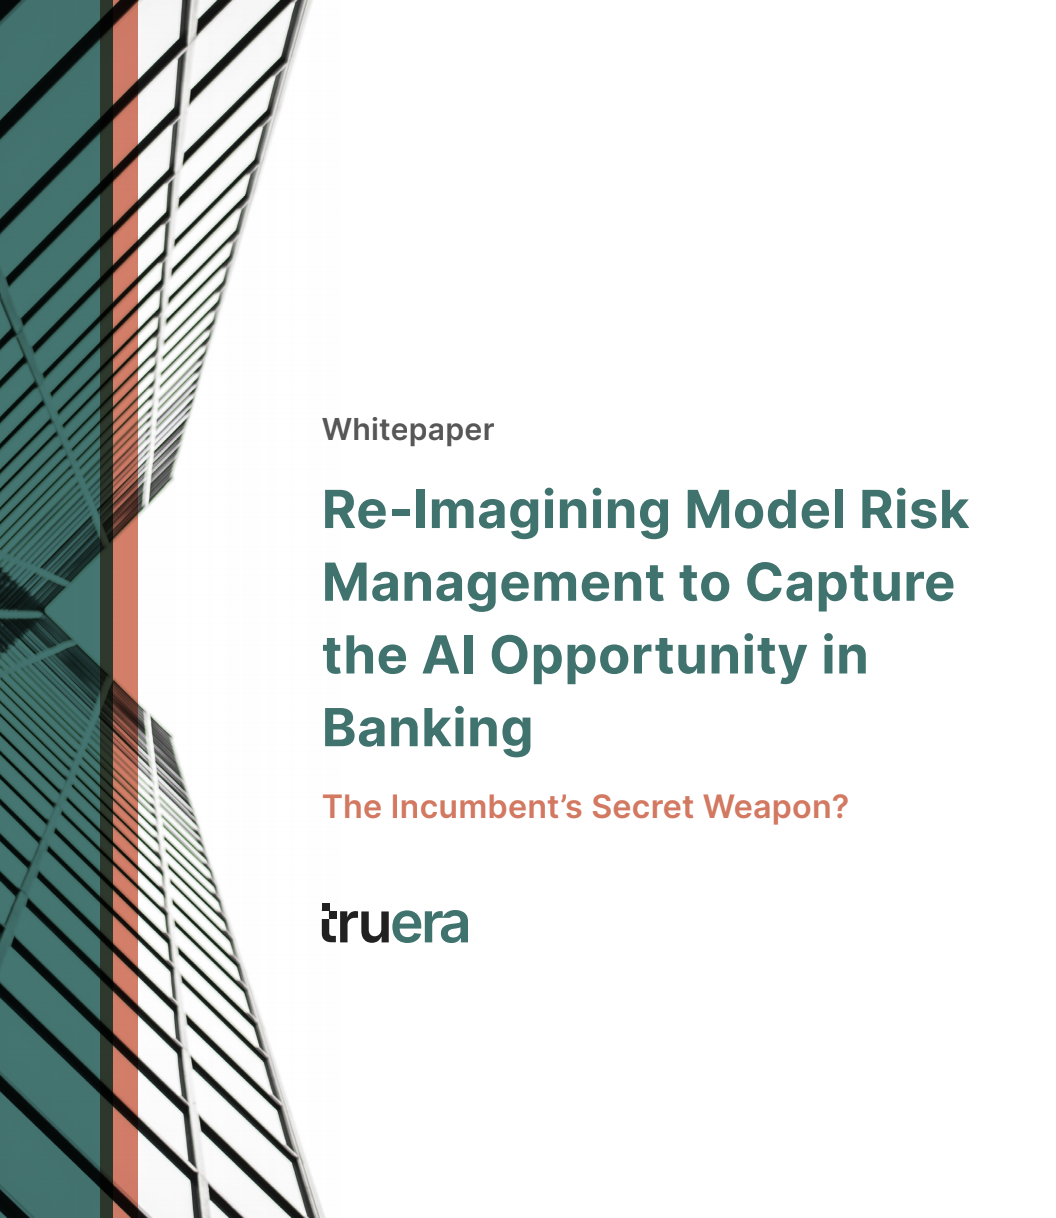 Model Risk Management Whitepaper